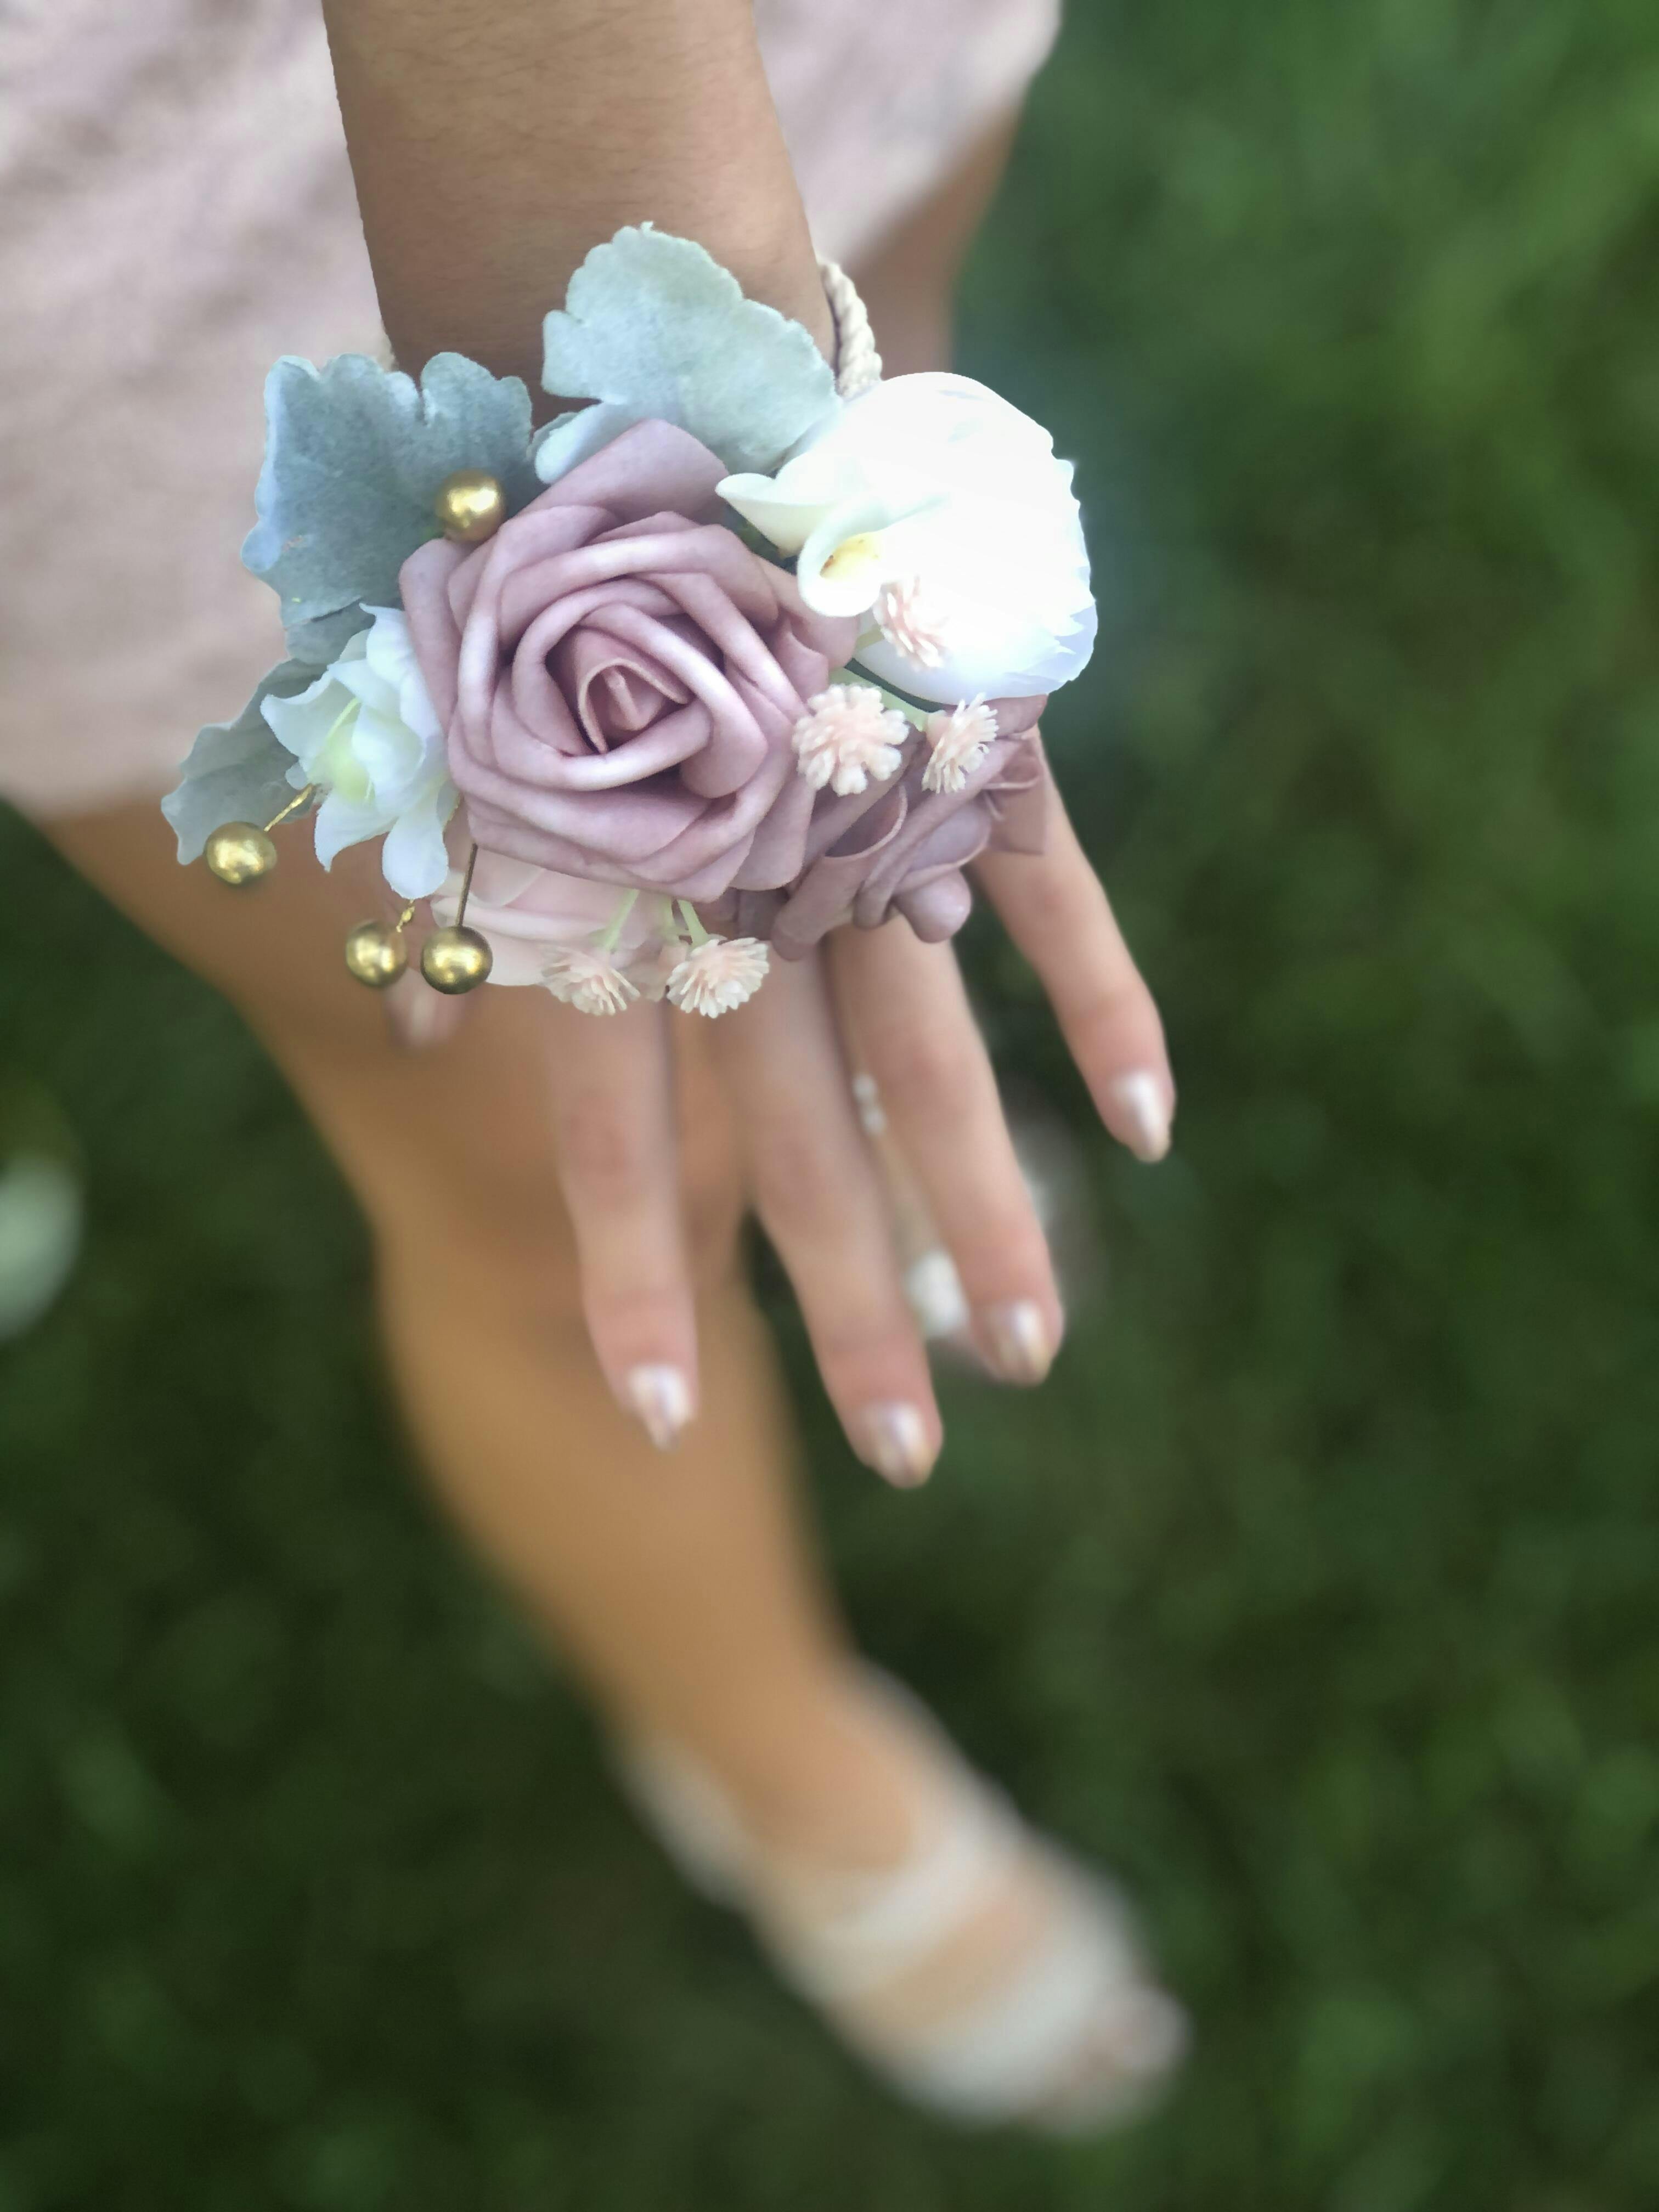  YSUCAU Wrist Corsages for Wedding Wrist Flower Dusty